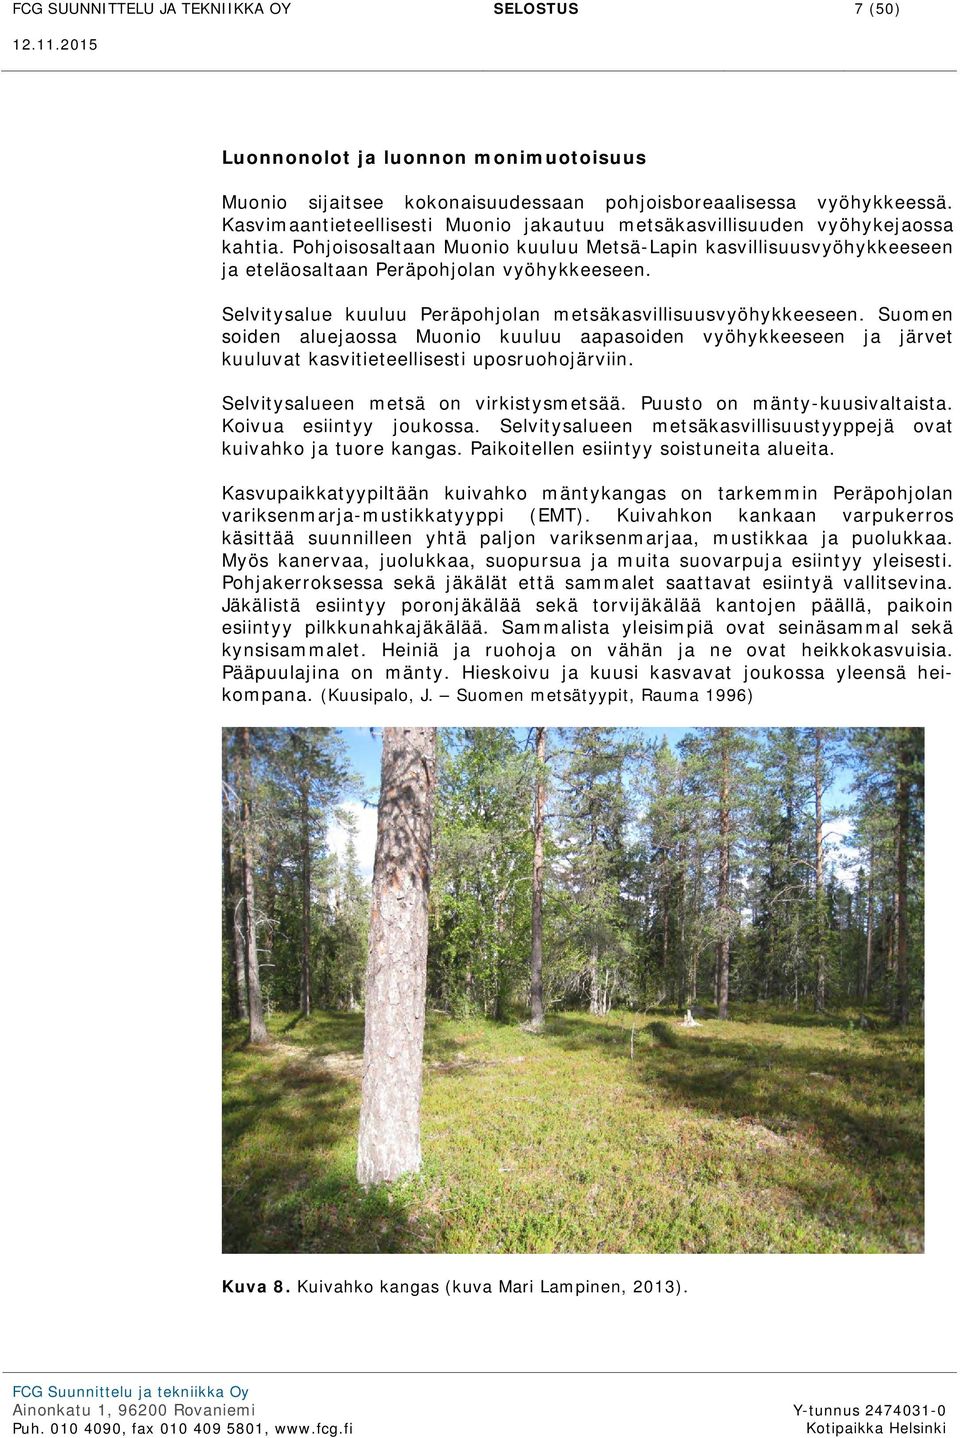 Selvitysalue kuuluu Peräpohjolan metsäkasvillisuusvyöhykkeeseen. Suomen soiden aluejaossa Muonio kuuluu aapasoiden vyöhykkeeseen ja järvet kuuluvat kasvitieteellisesti uposruohojärviin.